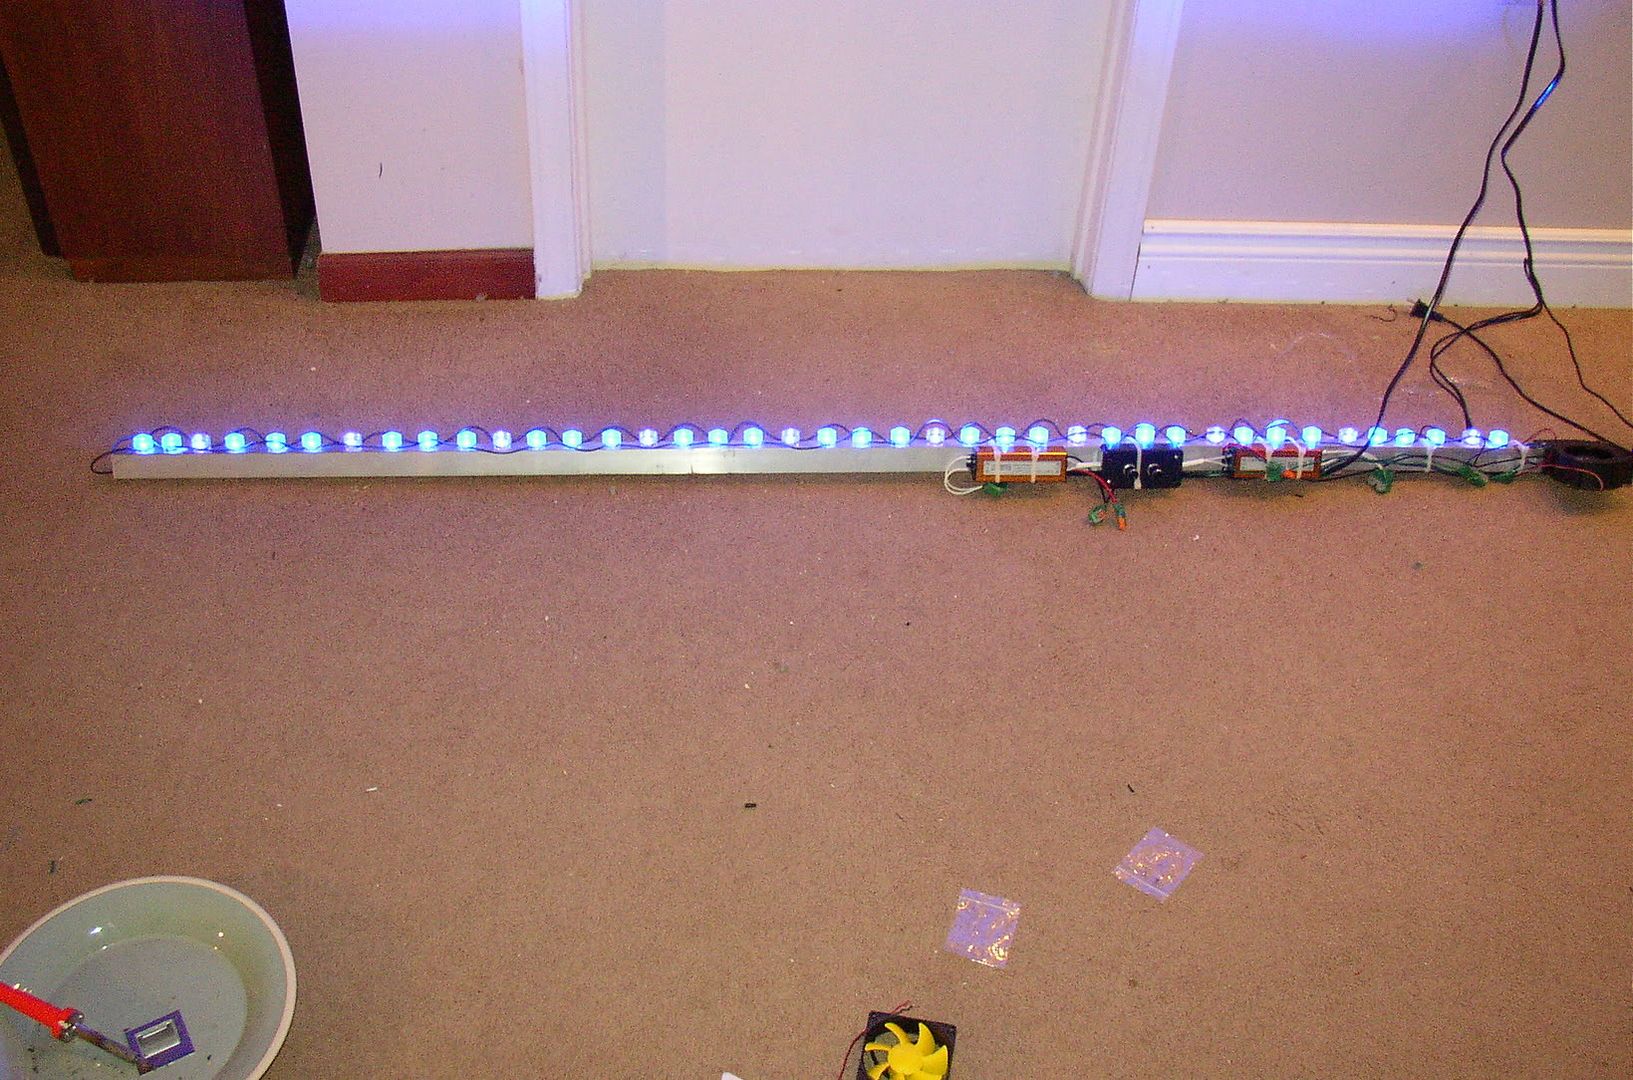 LEDDIY017 - DIY LED project.  24 x 3w and 40 x 3w